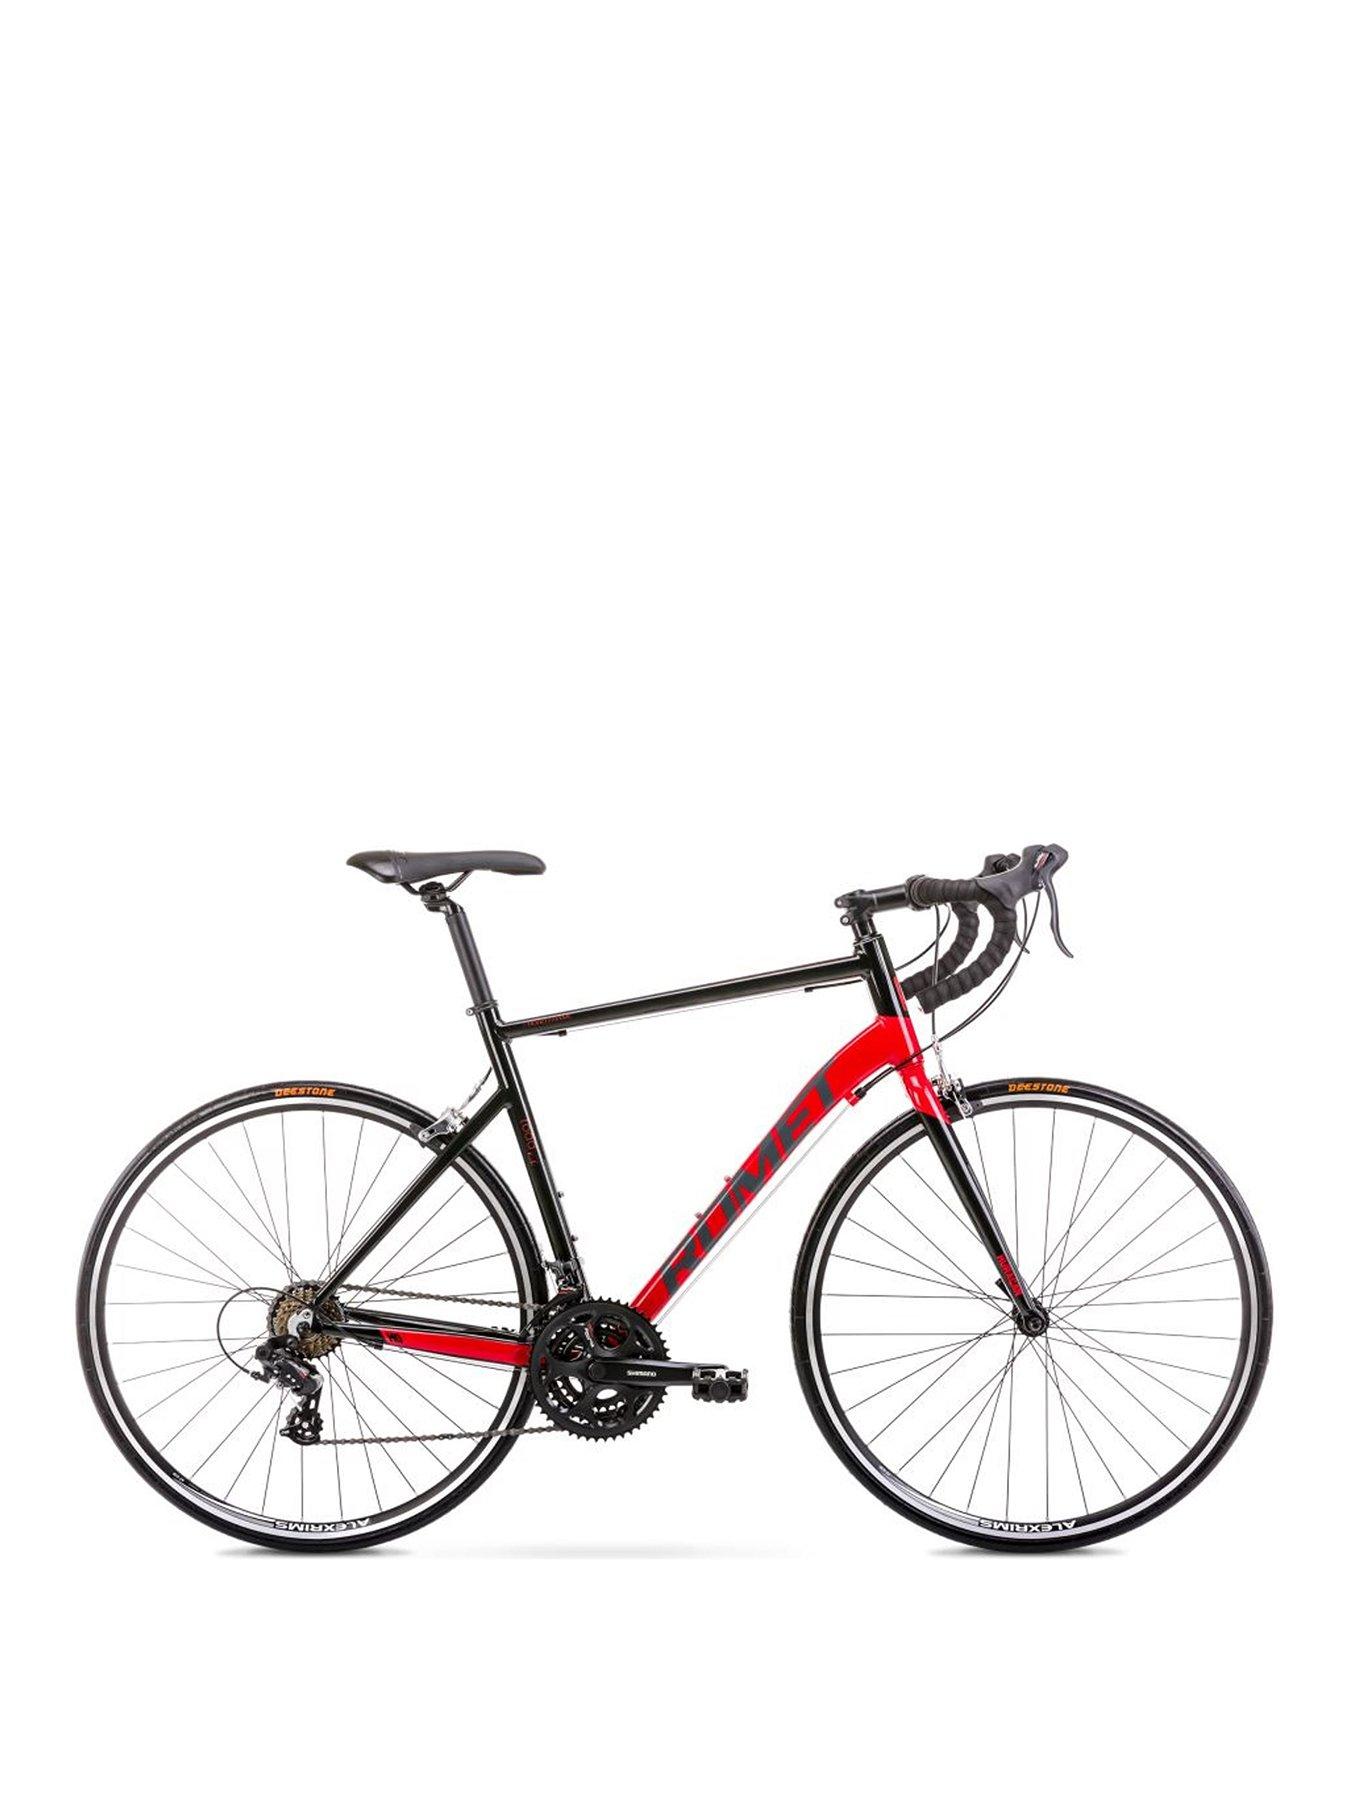 53cm bike